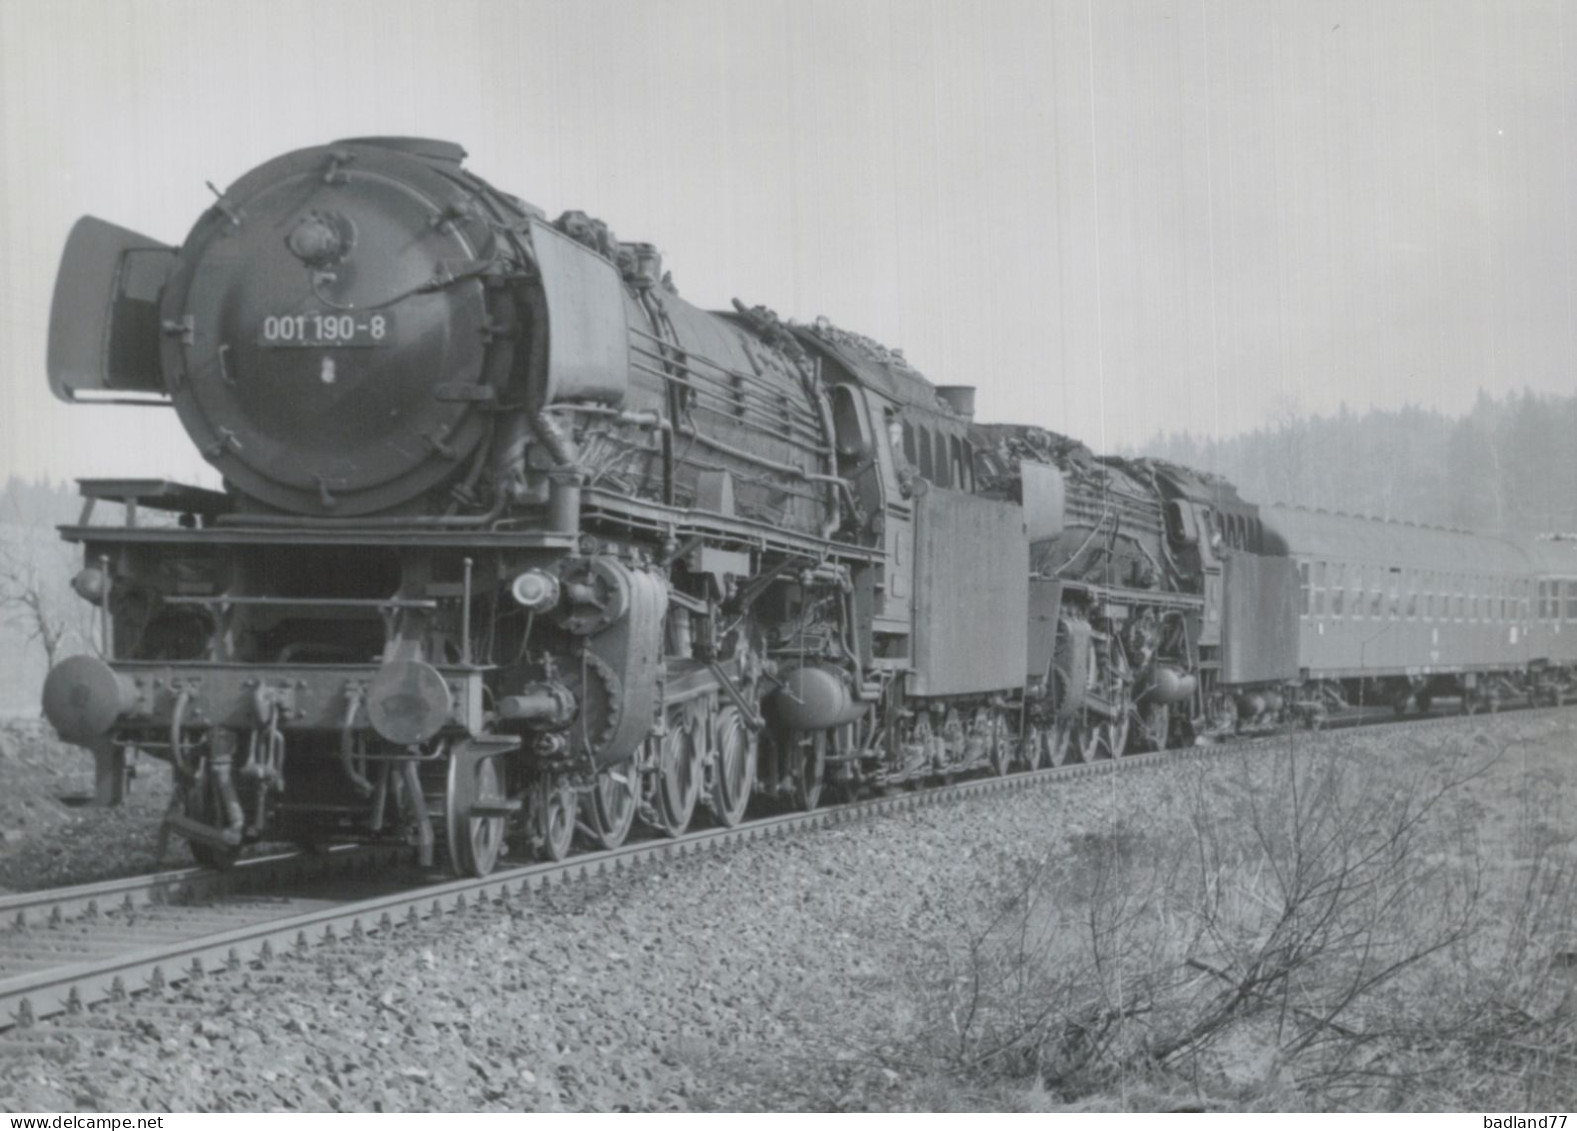 Locomotive Allemande - DB Dampflokomotive - 001 190 Mit 01 088 Bei Höflas 4-71  - H.Kühn - Ferrovie